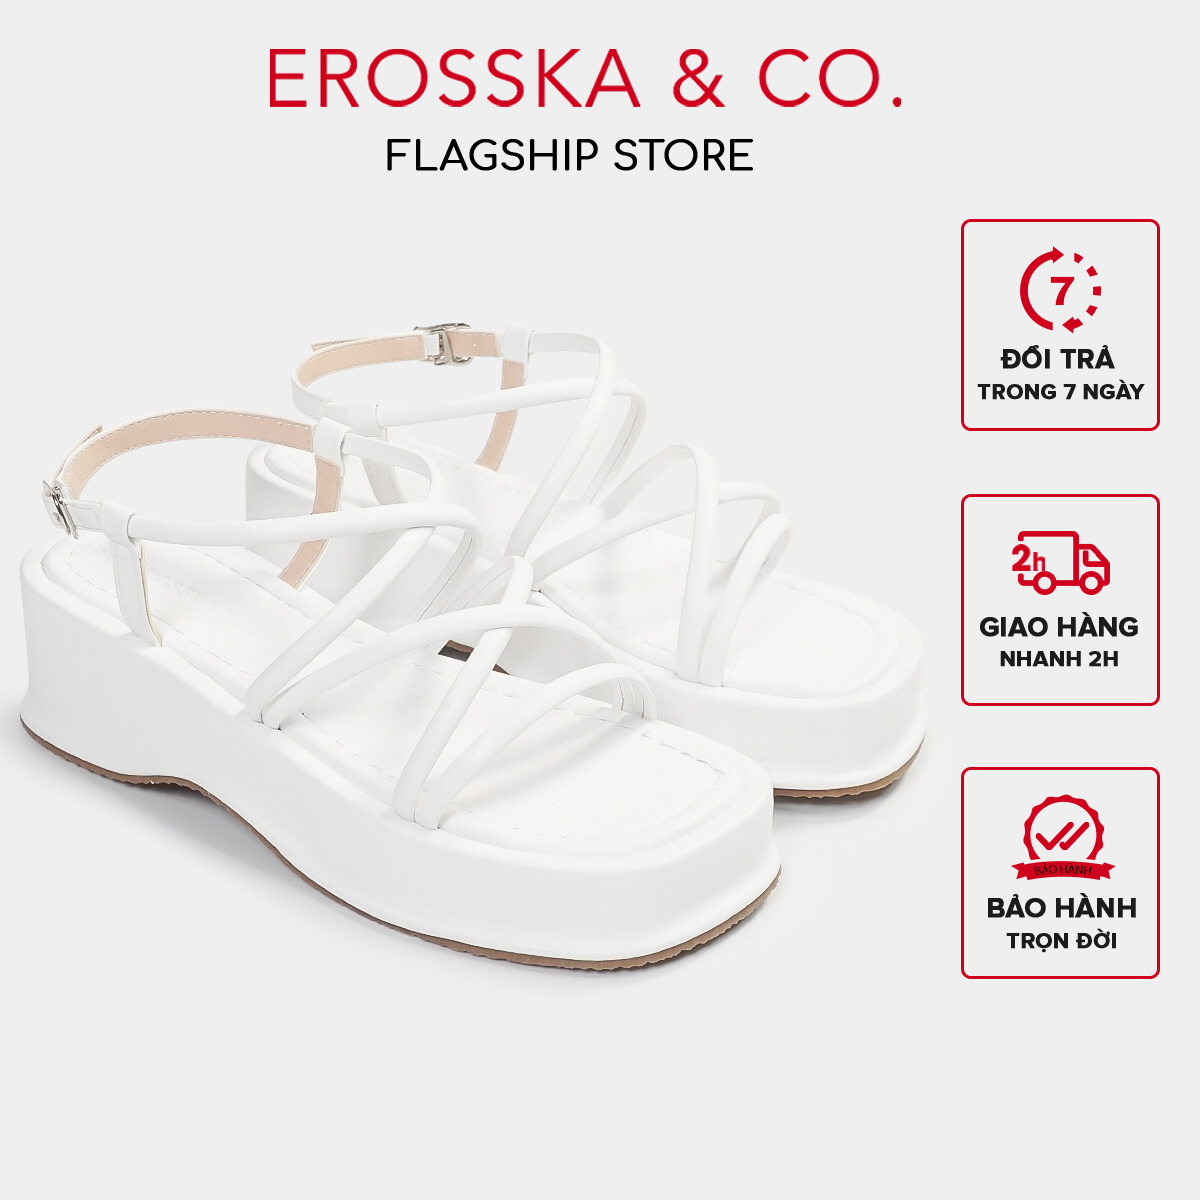 [CHỈ 18/12 0H-12H - MUA 3 GIẢM 20%] Erosska - Giày sandal nữ đế xuồng phối dây quai mảnh thiết kế basic cao 6cm màu nude - SB014